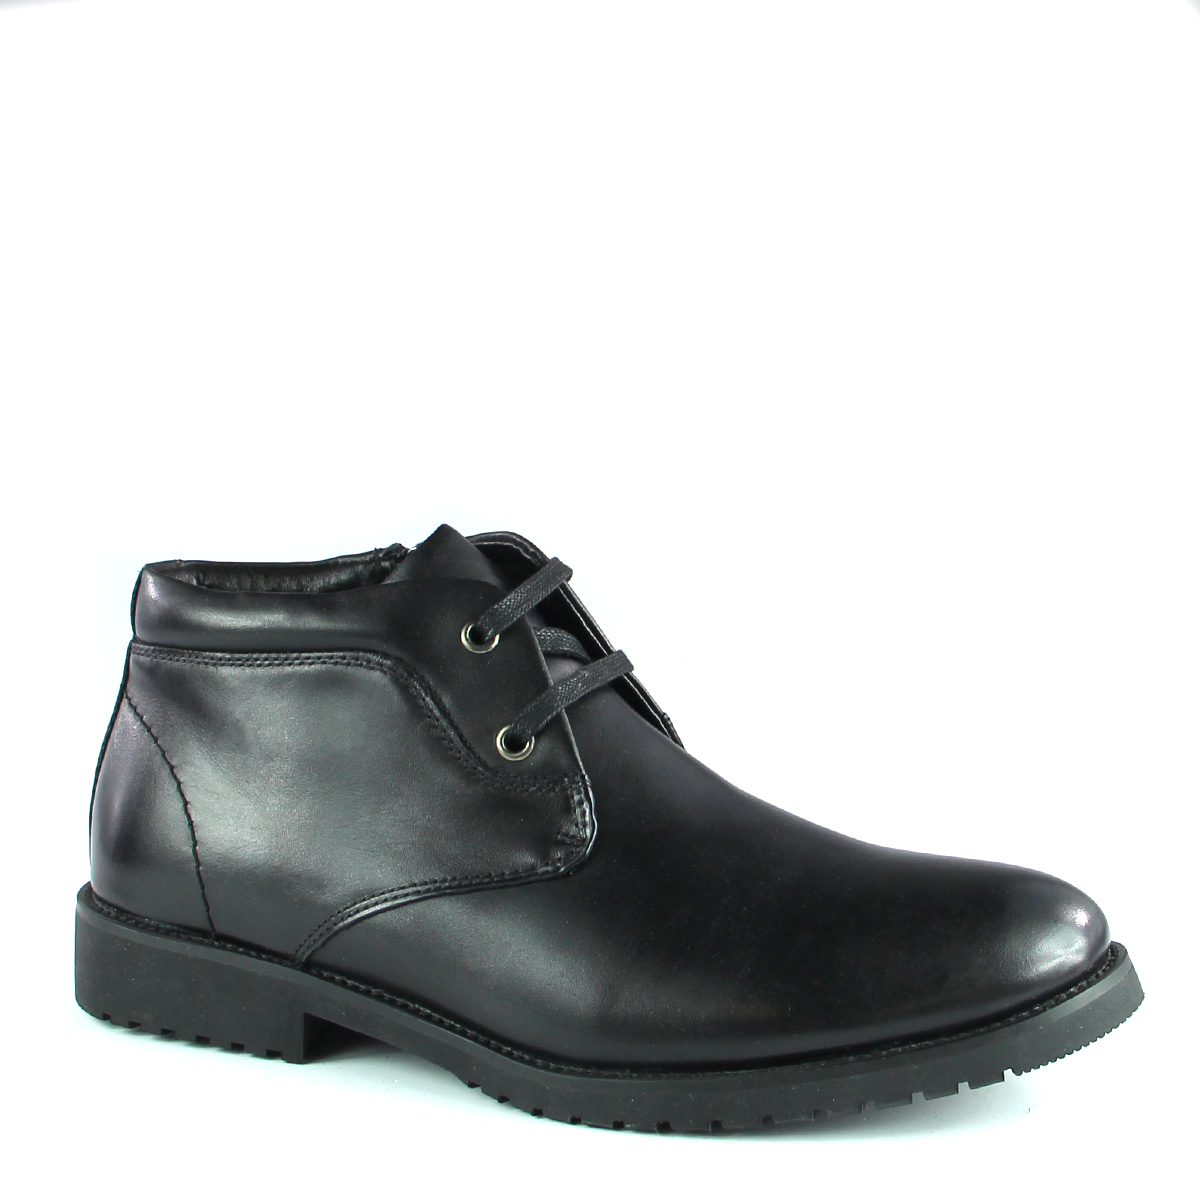 Купить ботинки мужские 44. Ботинки DNLP Legend мужские. TG collection обувь мужская GK 7111012 NVY. Ботинки Palladium мужские. Ботинки мужские 44 размер.